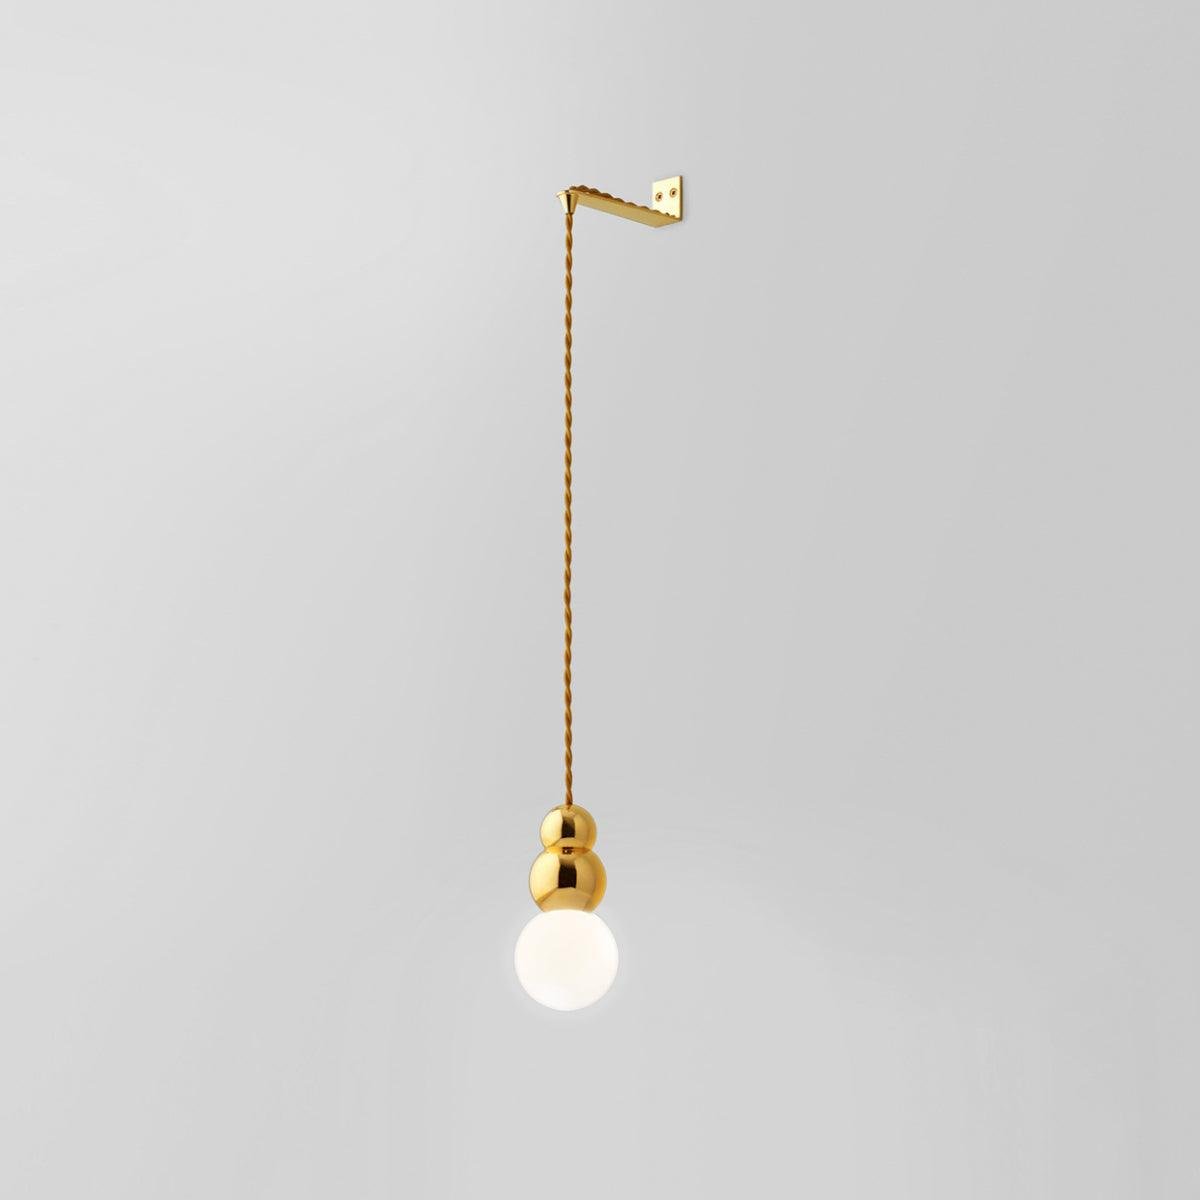 Flex Gold Ball Light Series - 3.9″ Diameter x 6.81″ Height (10cm x 17.3cm)